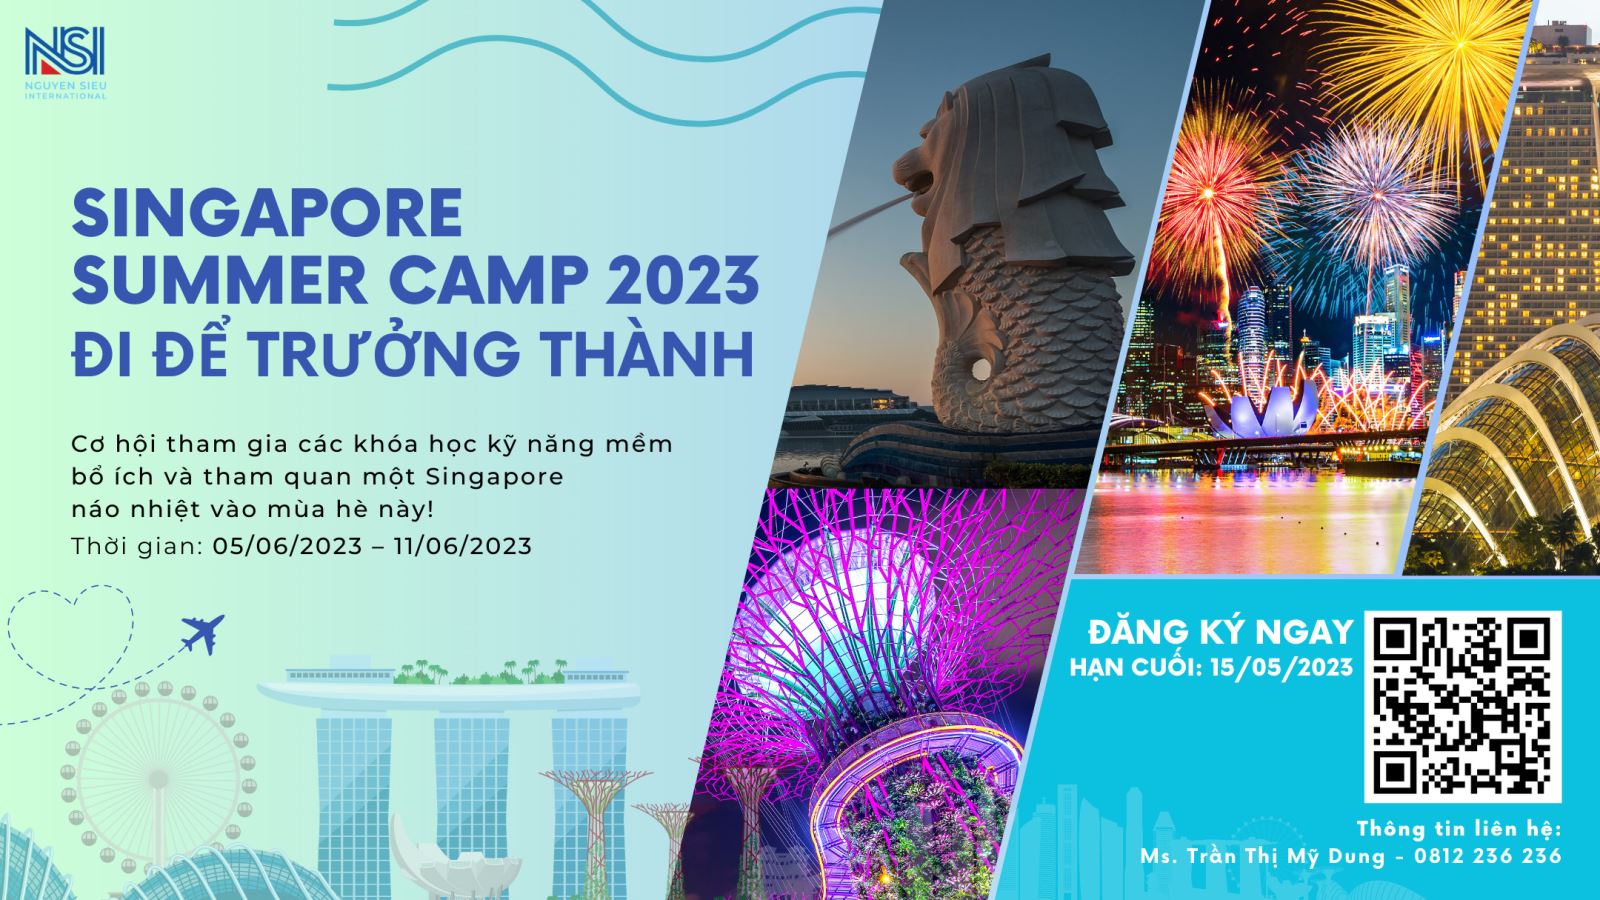 Summer Camp Singapore 2023 - Đi để trưởng thành